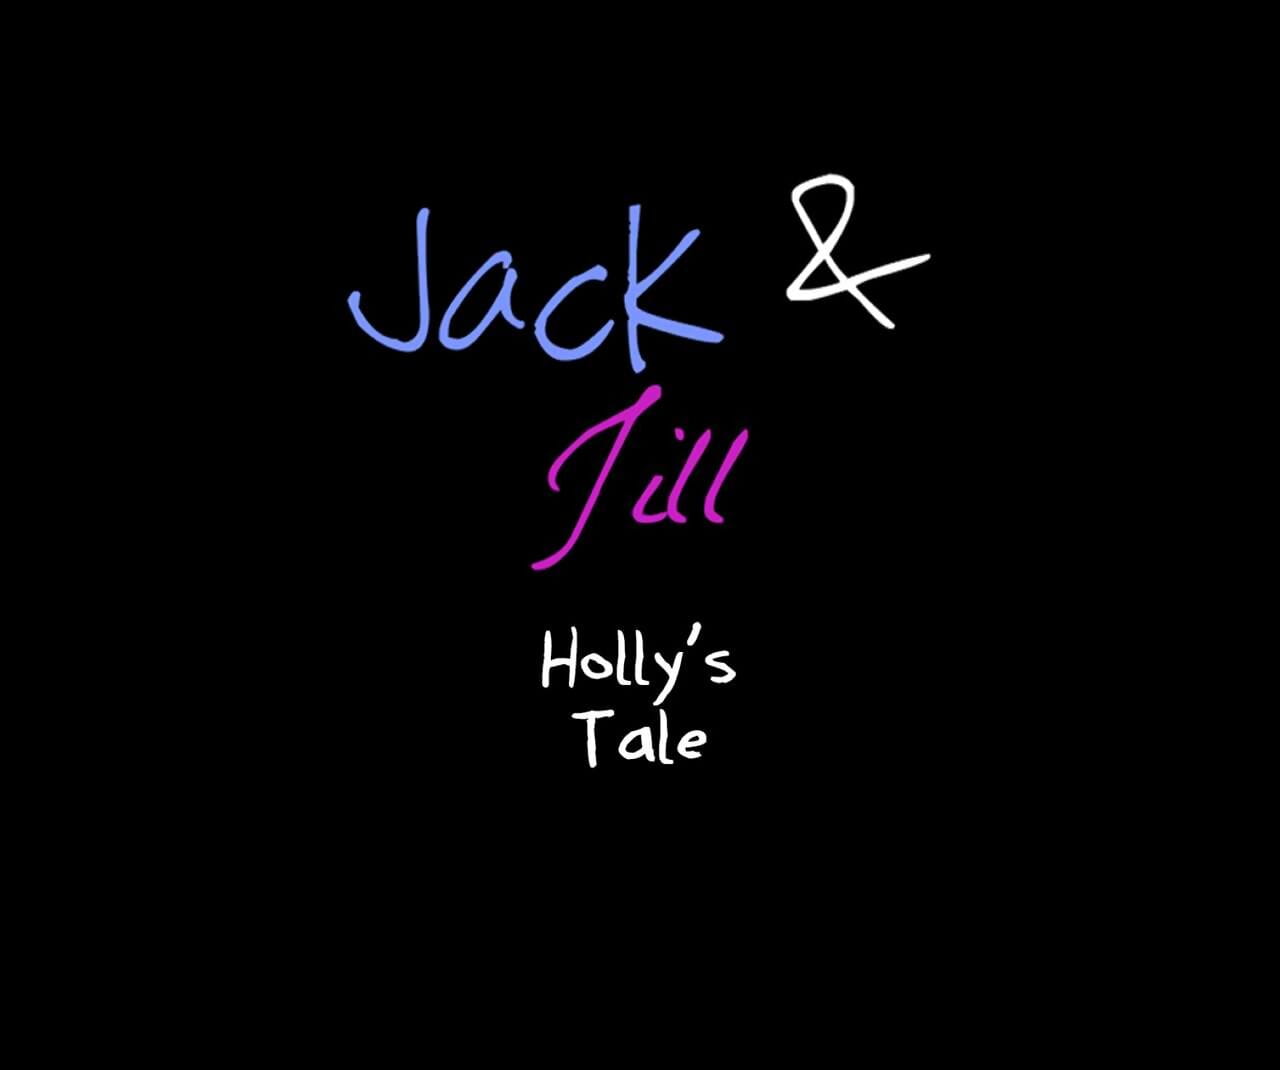 जैक और जिल Hollys कहानी page 1